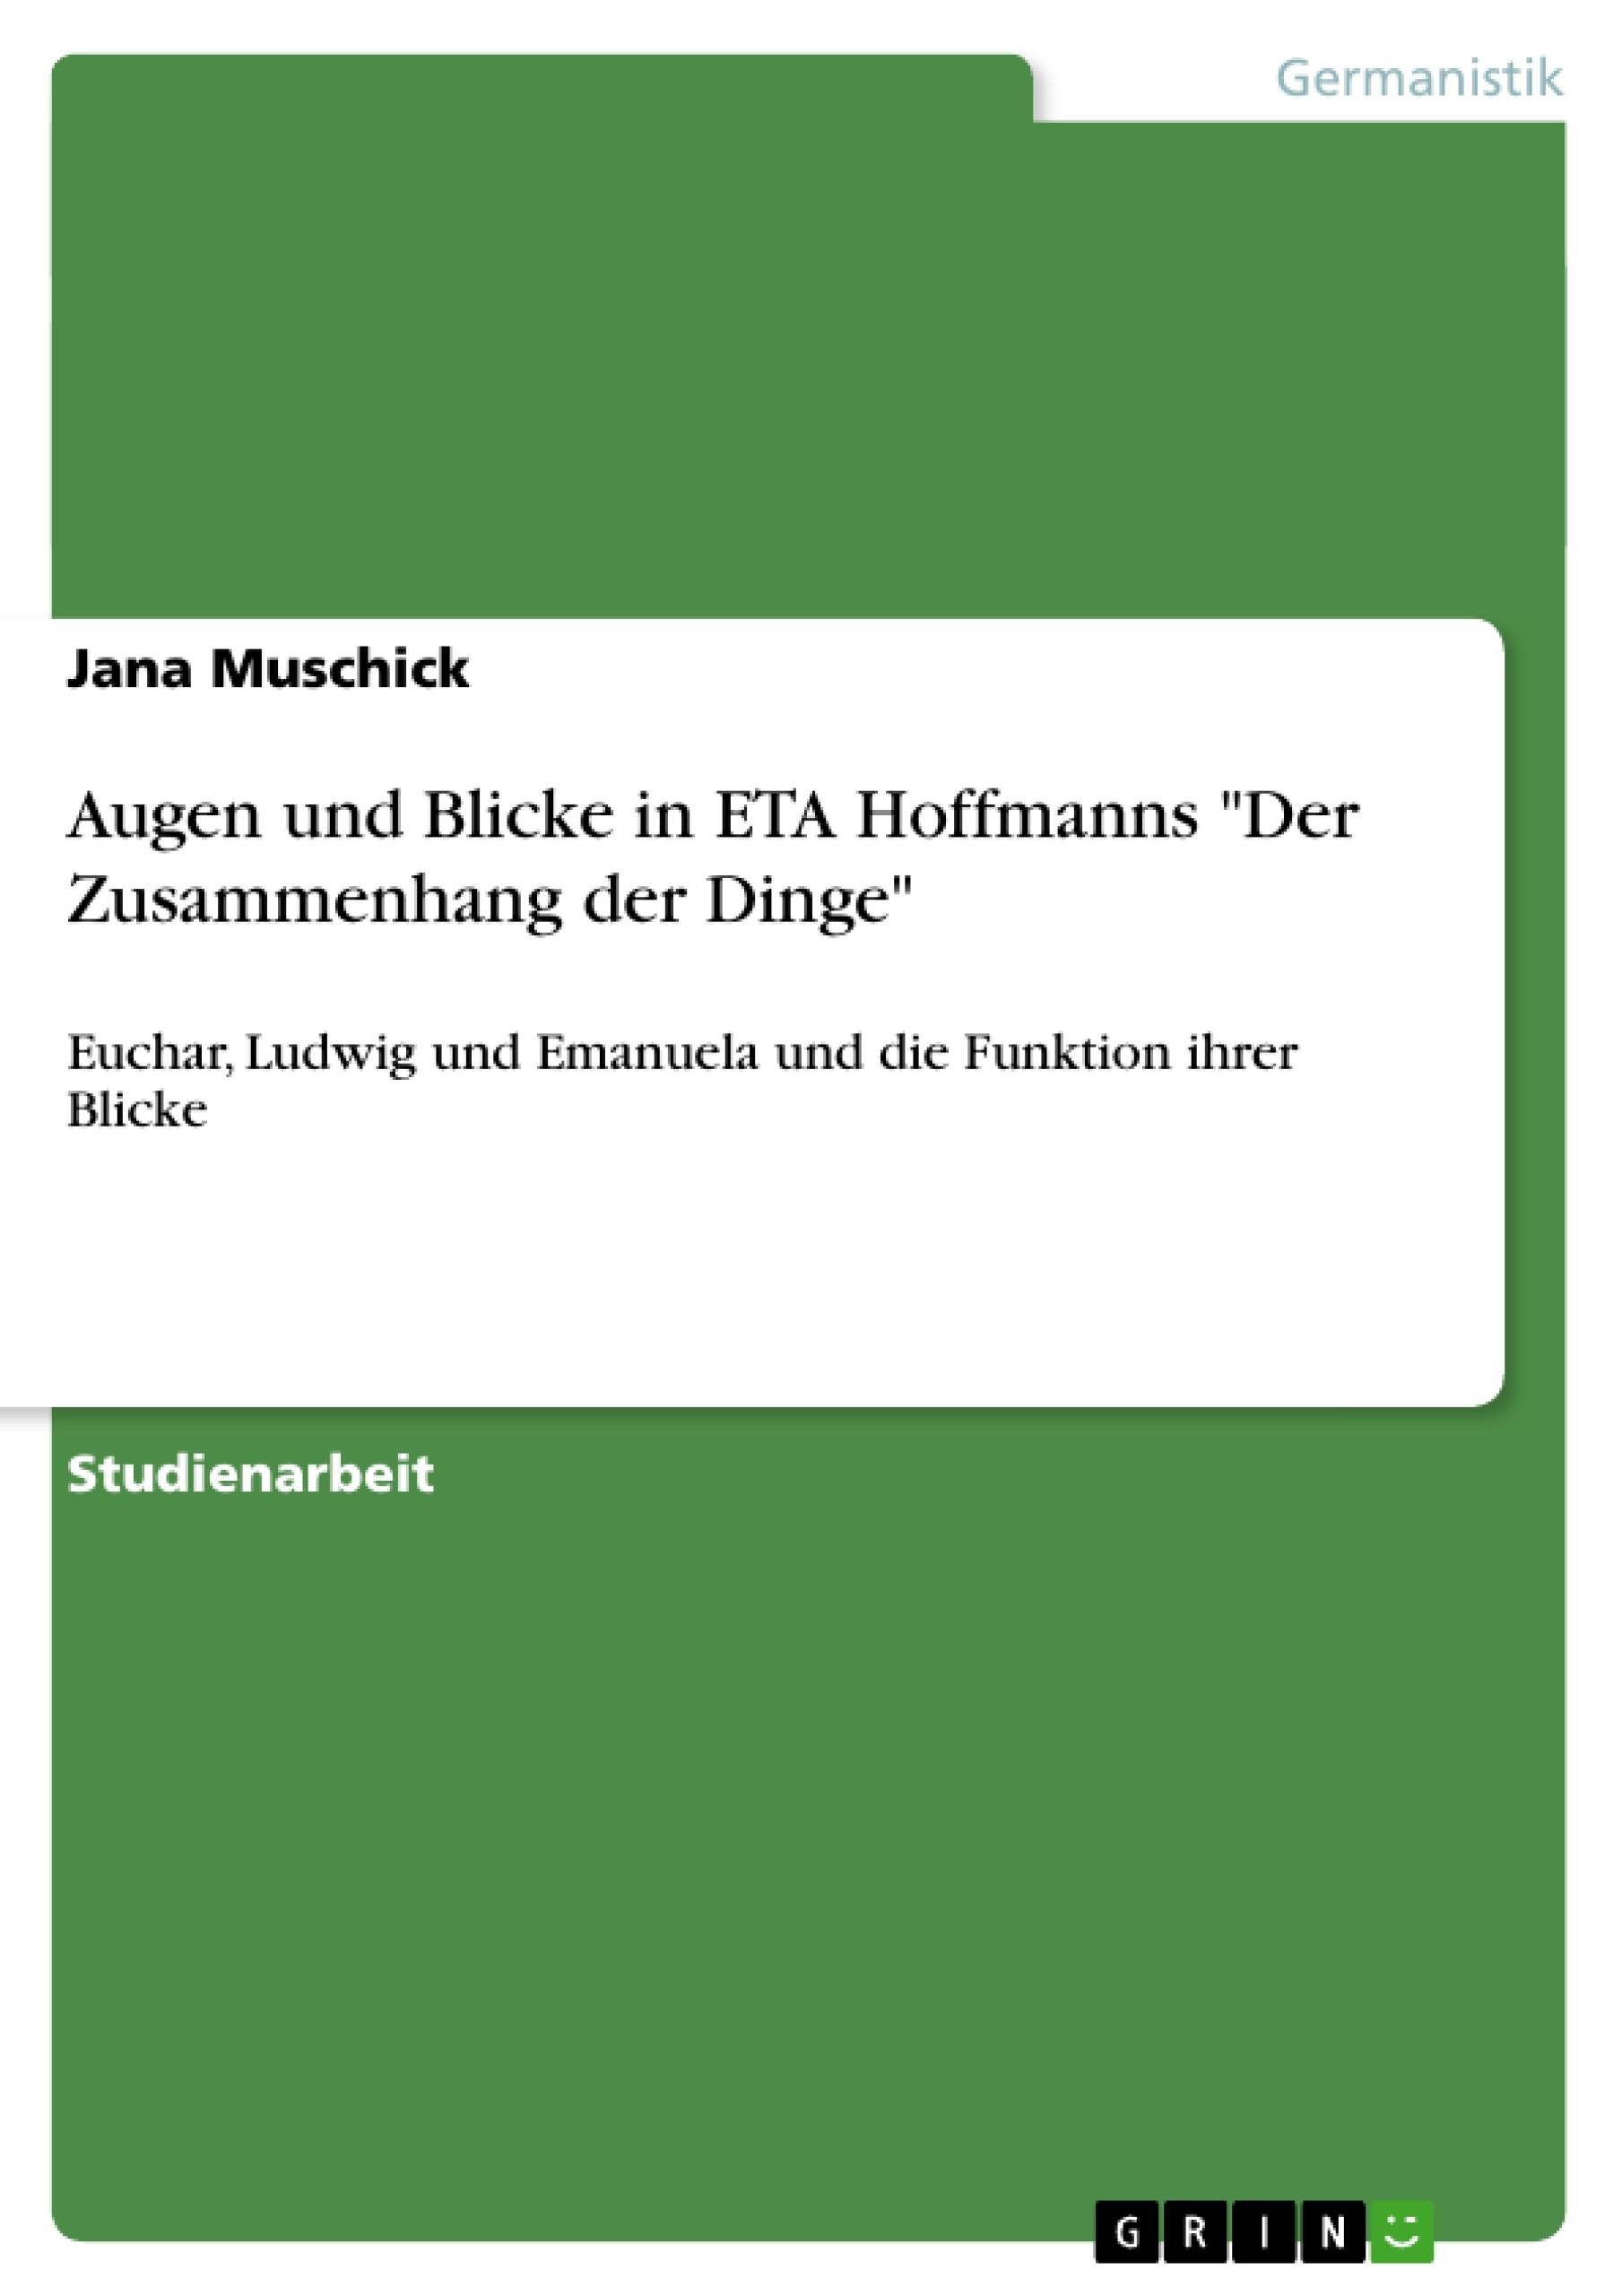 Title: Augen und Blicke in ETA Hoffmanns "Der Zusammenhang der Dinge"